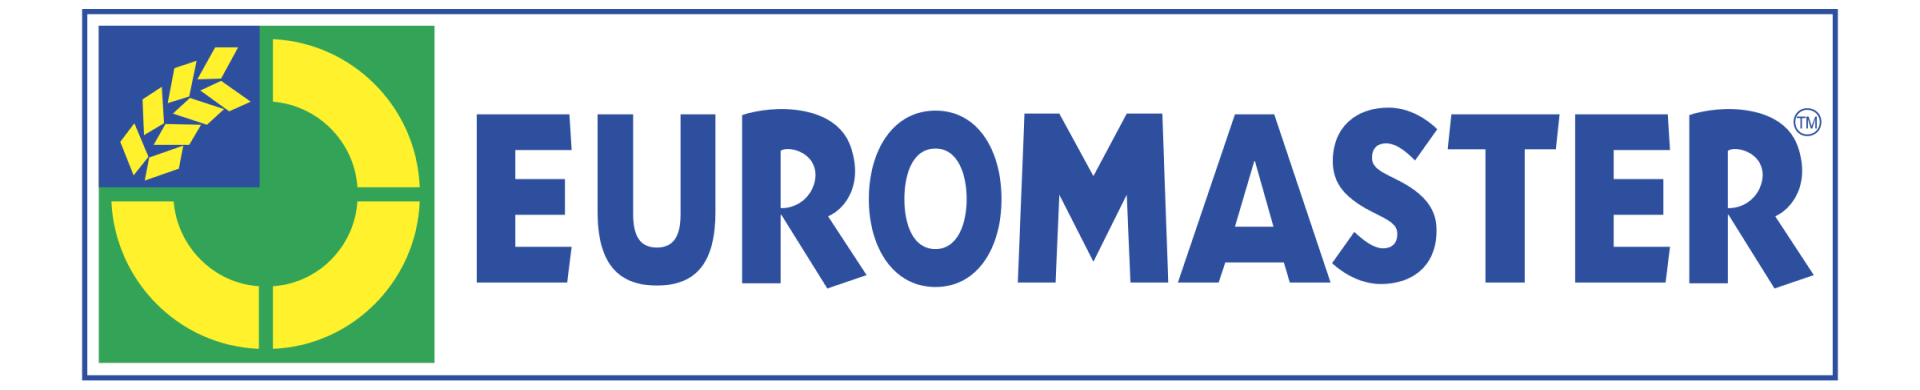 euromaster-logo